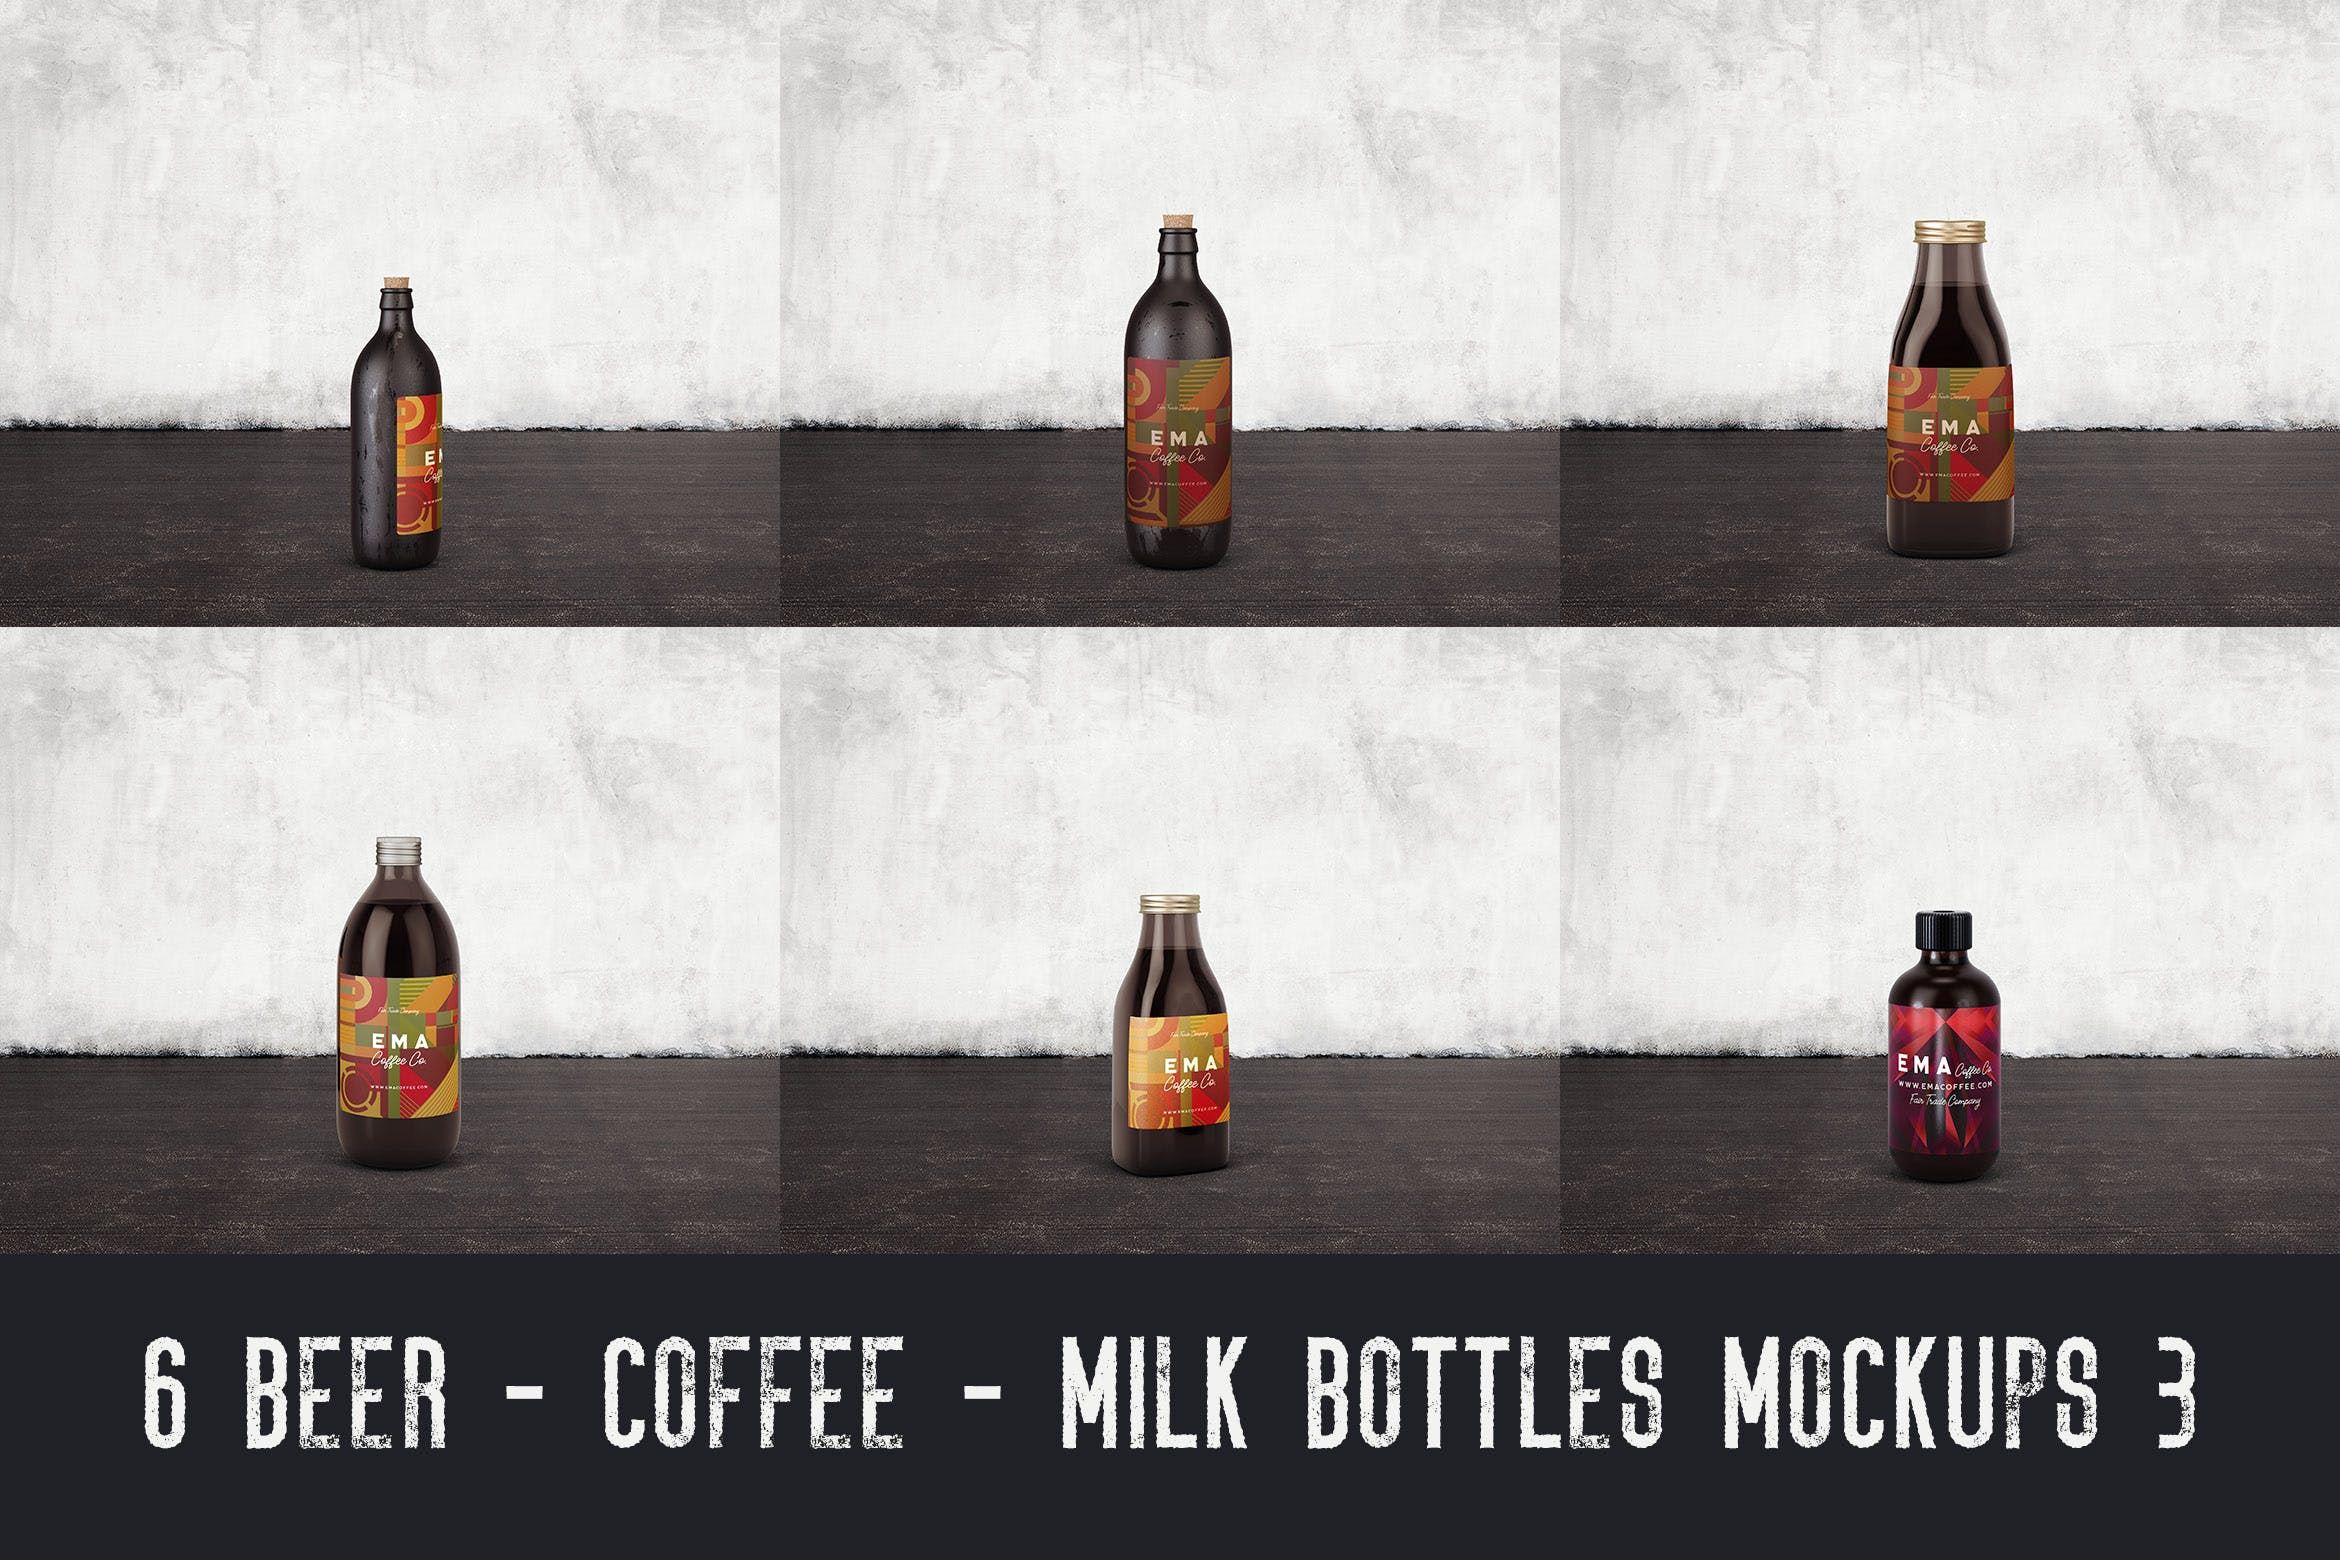 6个啤酒/咖啡/牛奶瓶外观设计素材库精选v3 6 Beer Coffee Milk Bottles Mockups 3插图